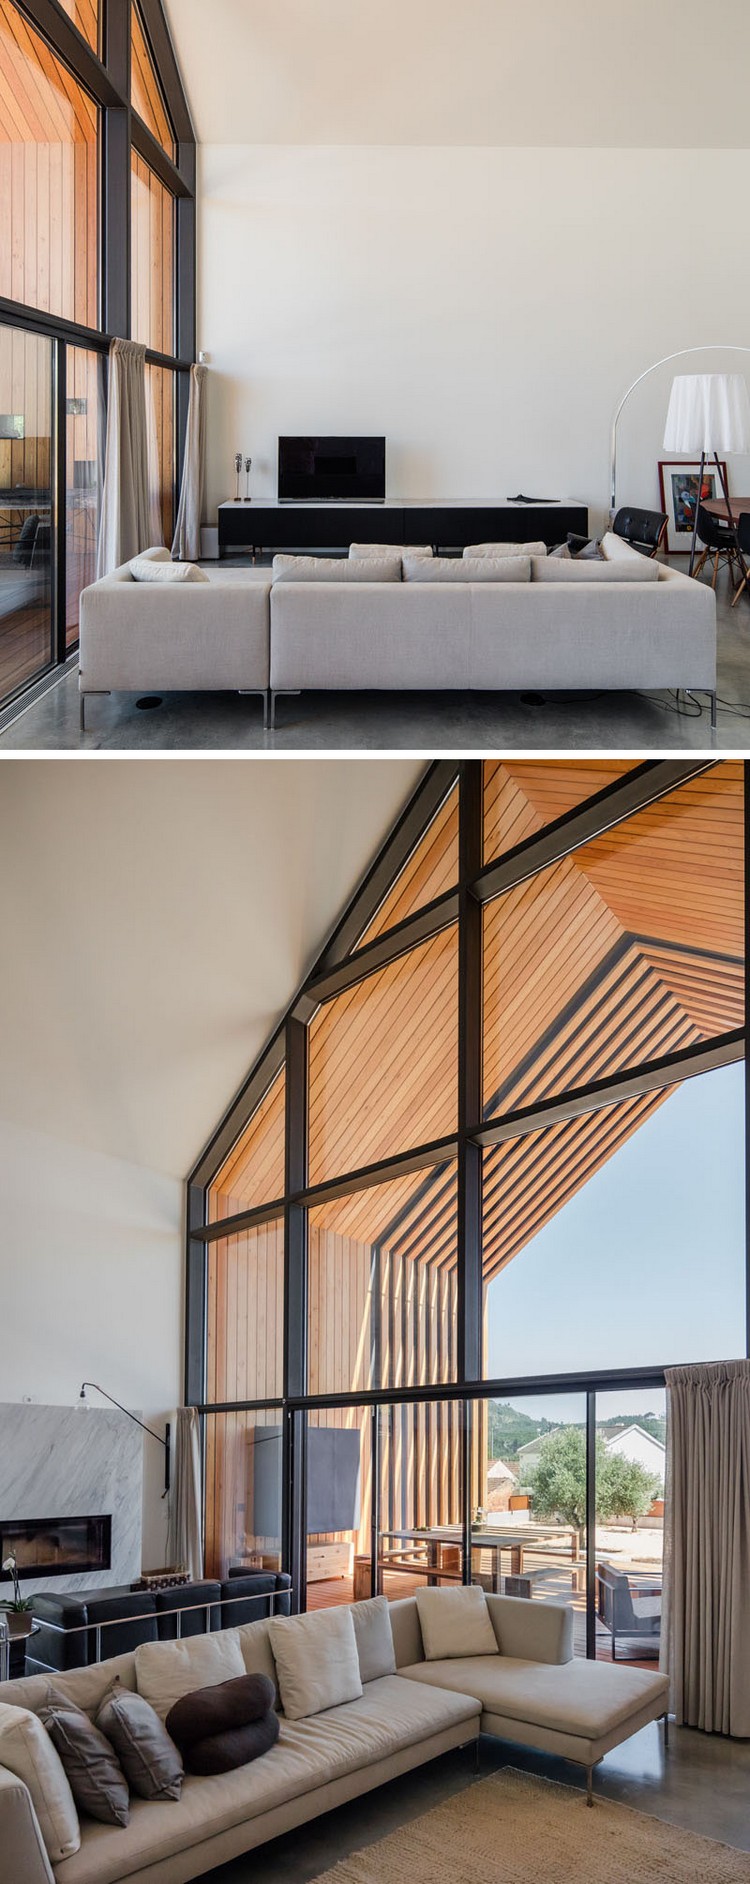 fenêtre sur mesure intérieur moderne maison design architecte Portugal style épuré mobilier minimaliste